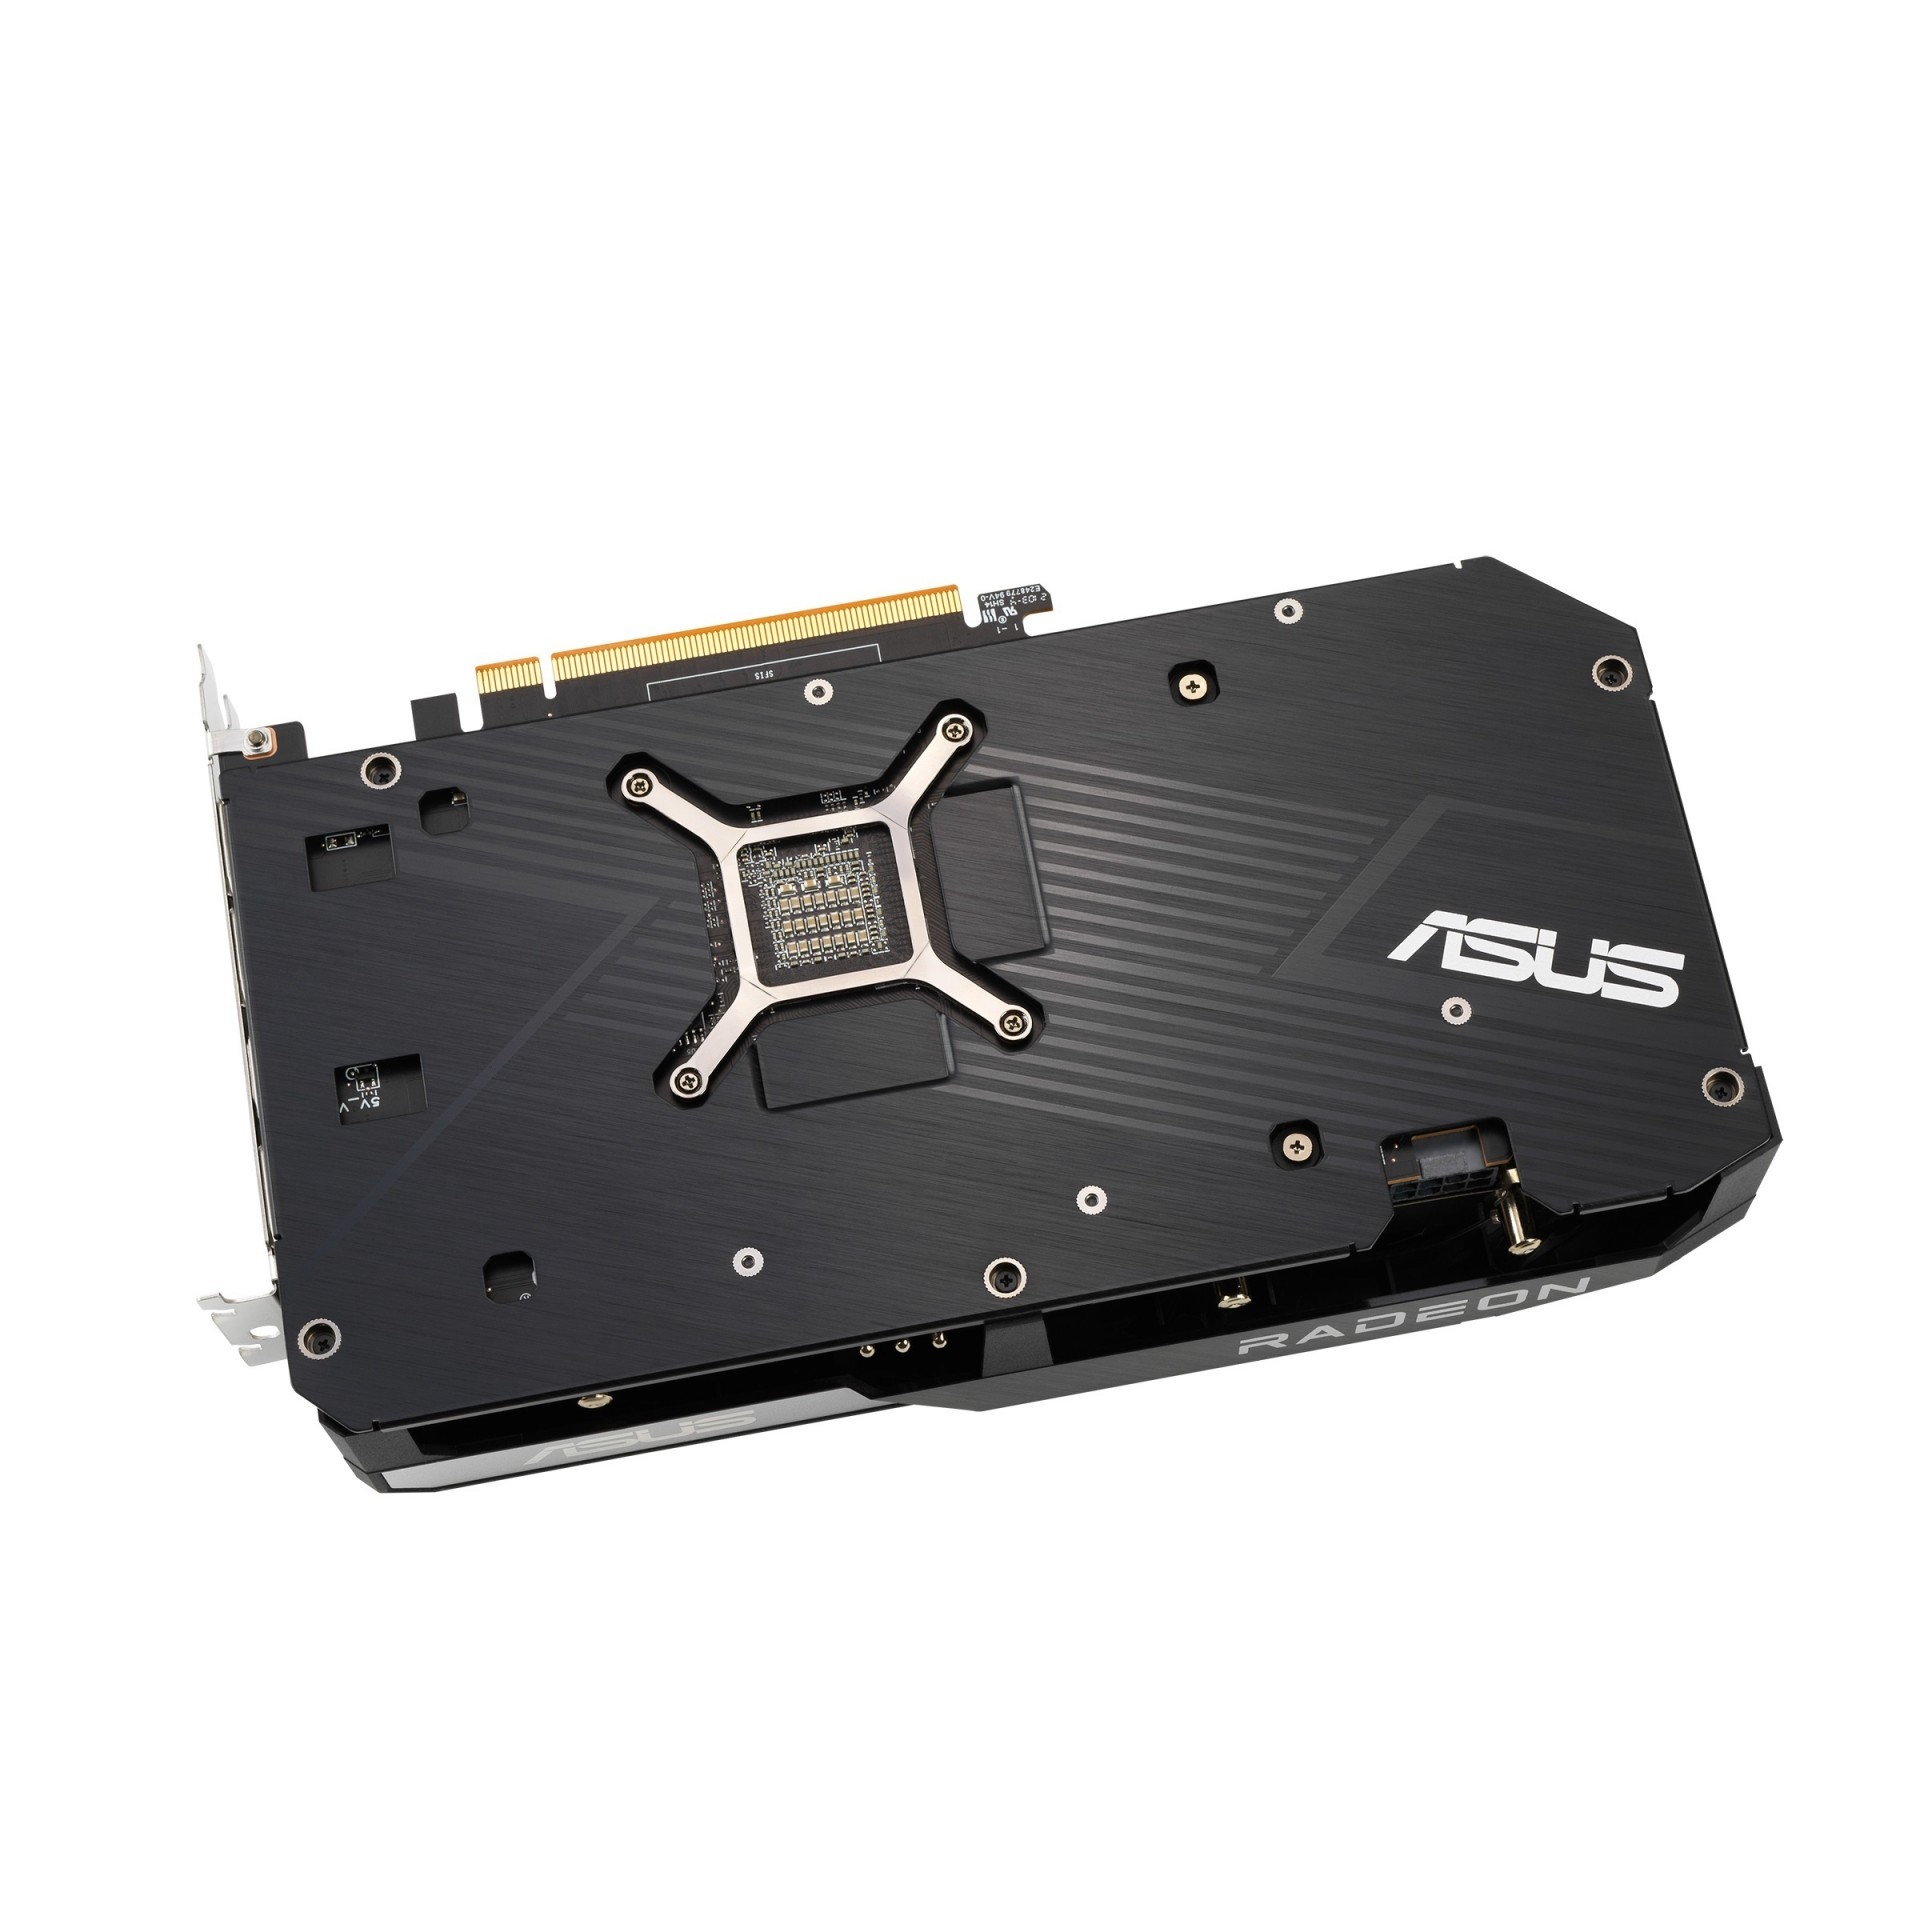 華碩推出兩款 AMD Radeon RX 6600 XT 系列顯示卡